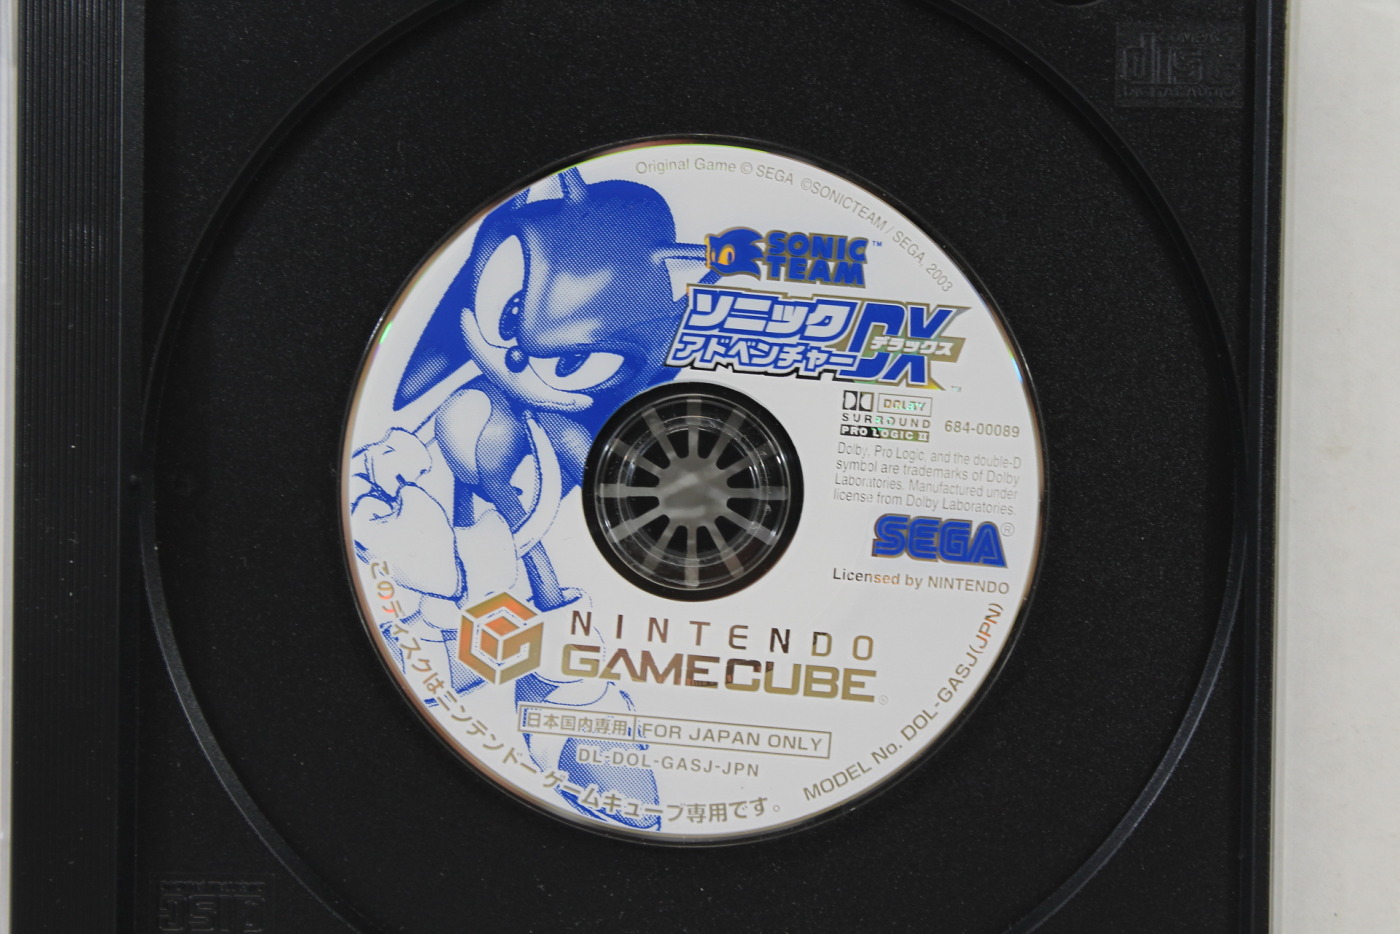 Sonic Adventure 2 Gamecube [Japan Import]